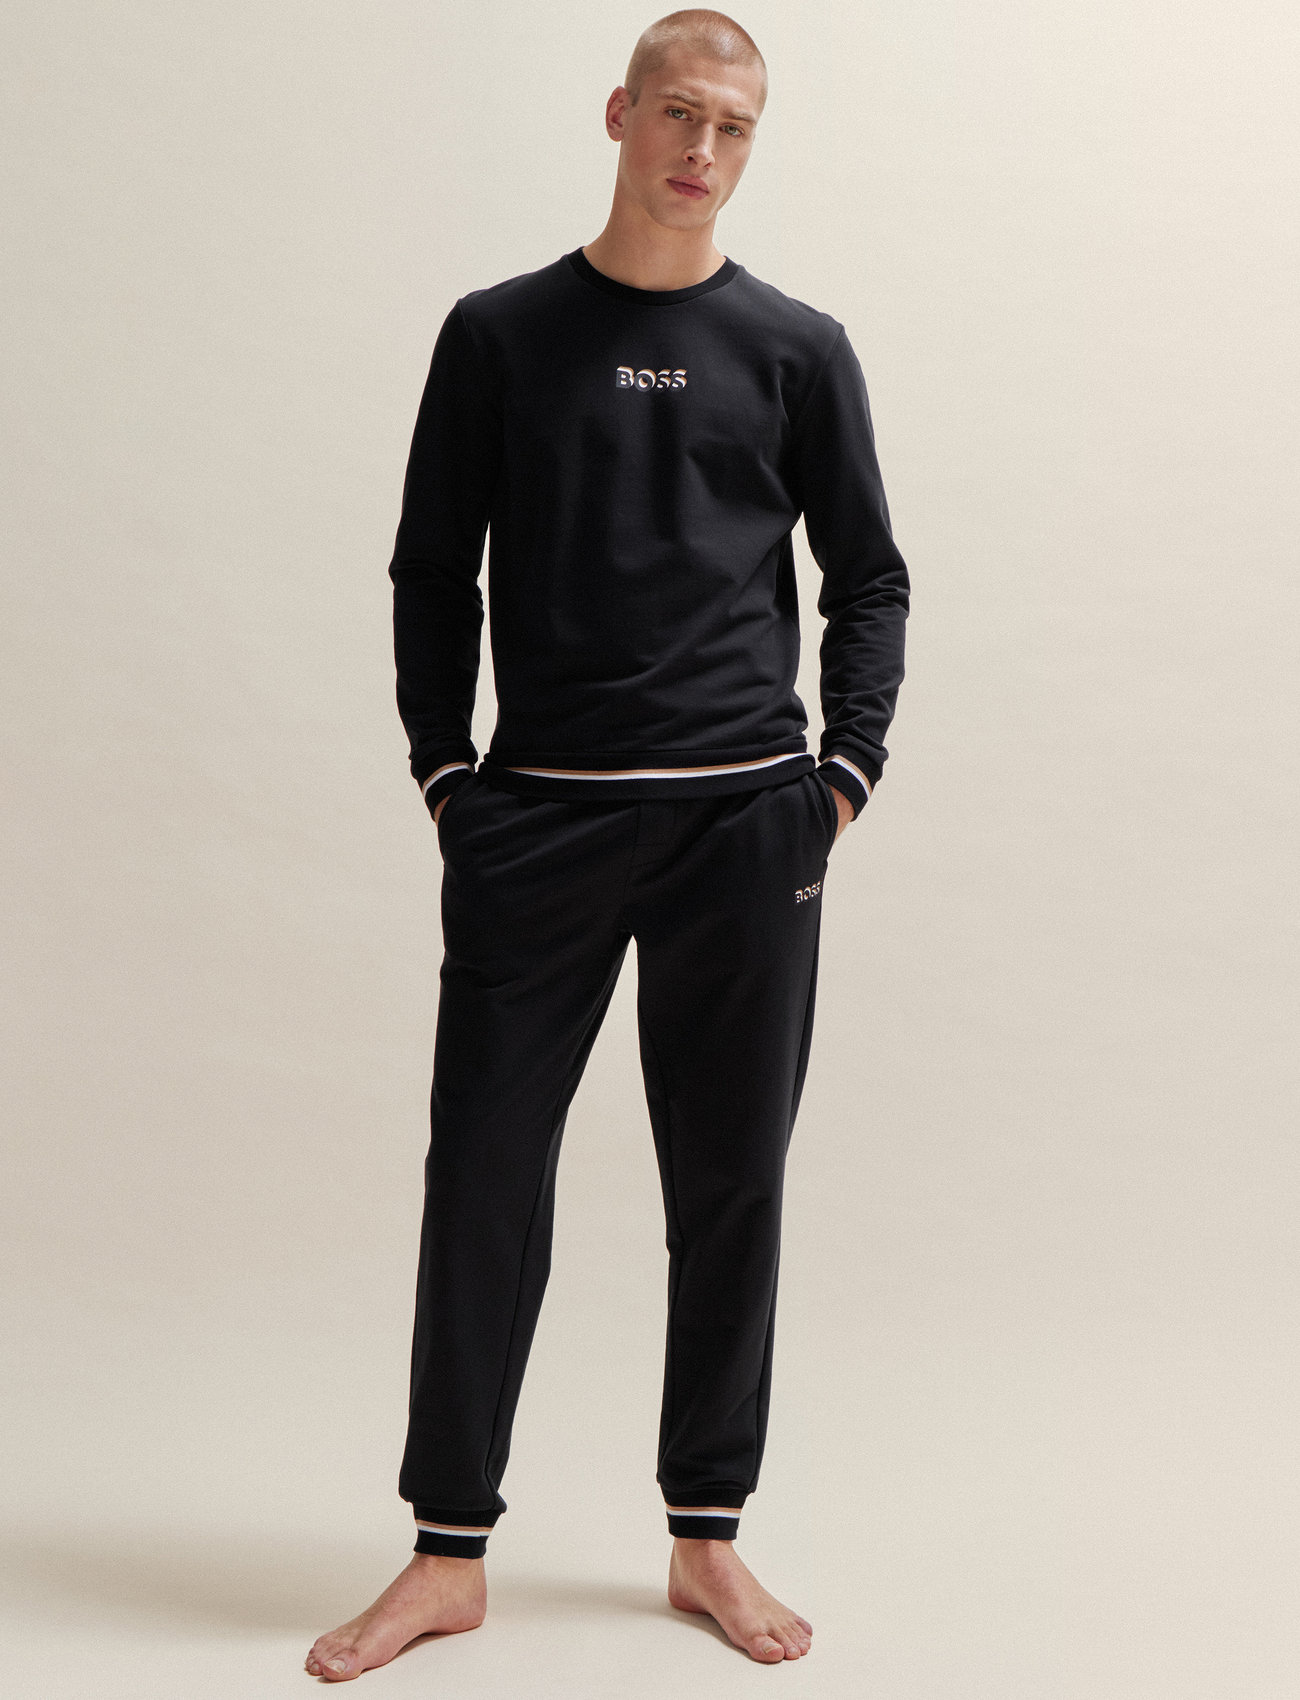 BOSS - Iconic Sweatshirt - pižamų marškinėliai - black - 1